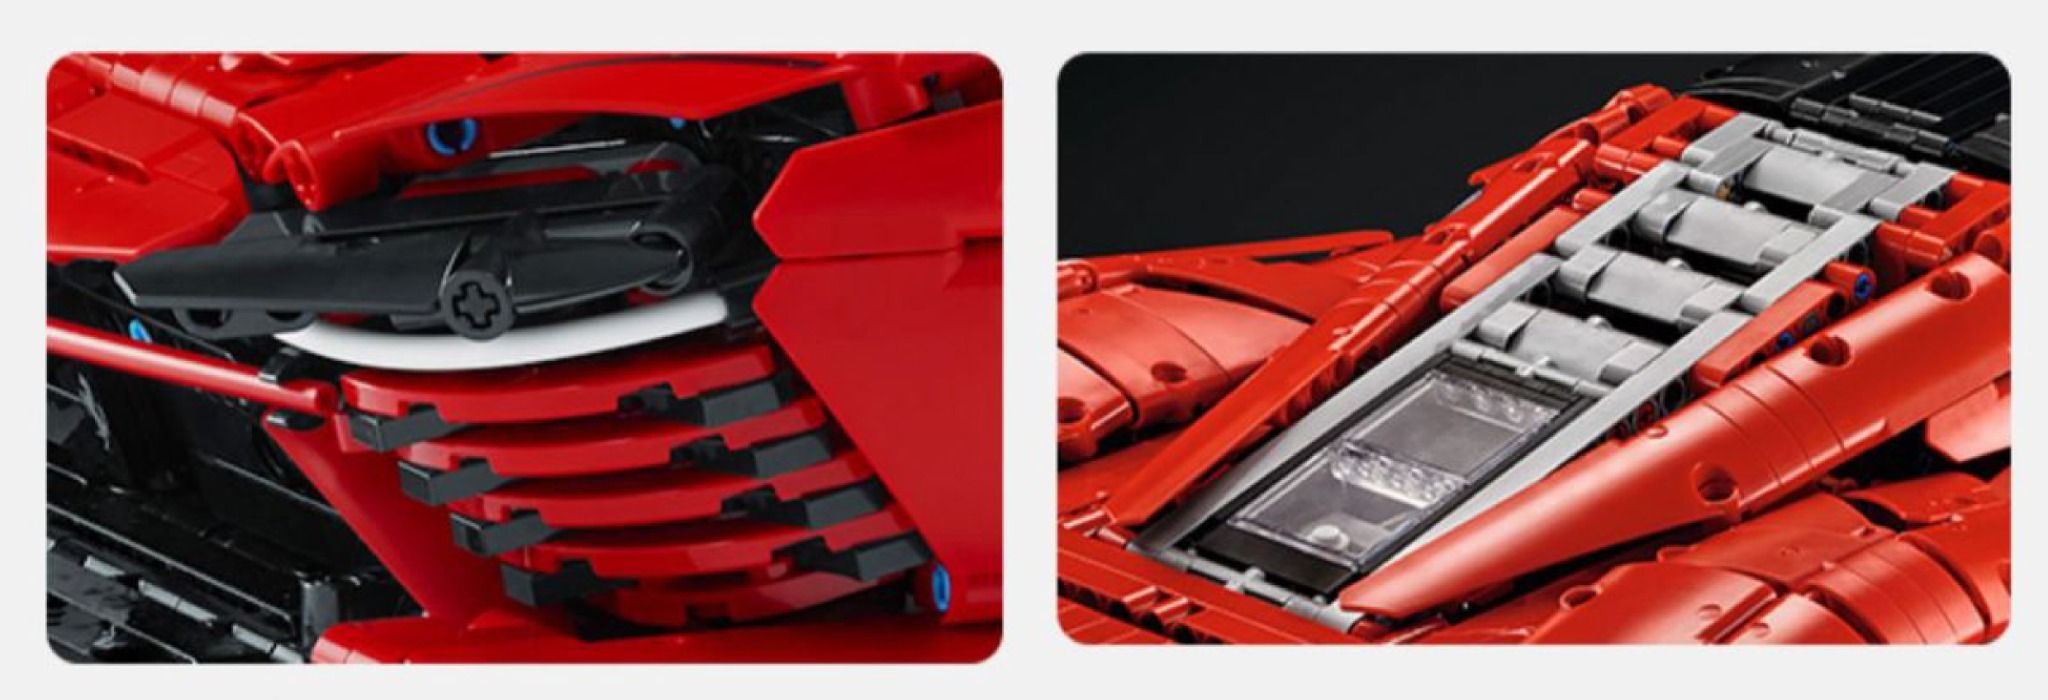  Mô hình xe ô tô lắp ghép Ferrari Daytona Sp3 race 3778 pcs tỉ lệ 1:5 LG016 